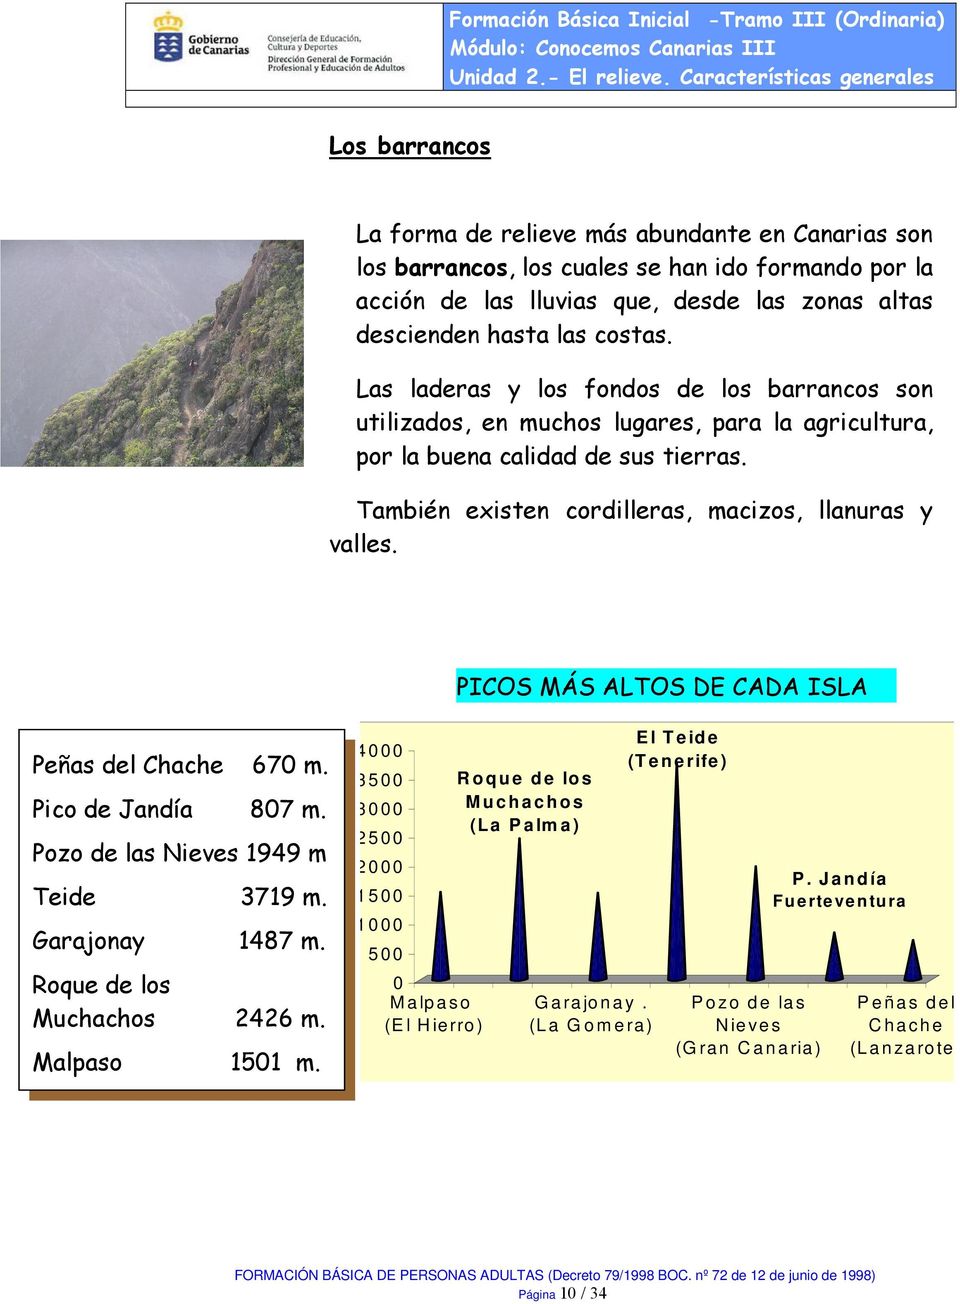 PICOS MÁS ALTOS DE CADA ISLA Peñas del Chache 670 m. Pico de Jandía 807 m. Pozo de las Nieves 1949 m Teide 3719 m. Garajonay 1487 m. Roque de los Muchachos 2426 m. Malpaso 1501 m.